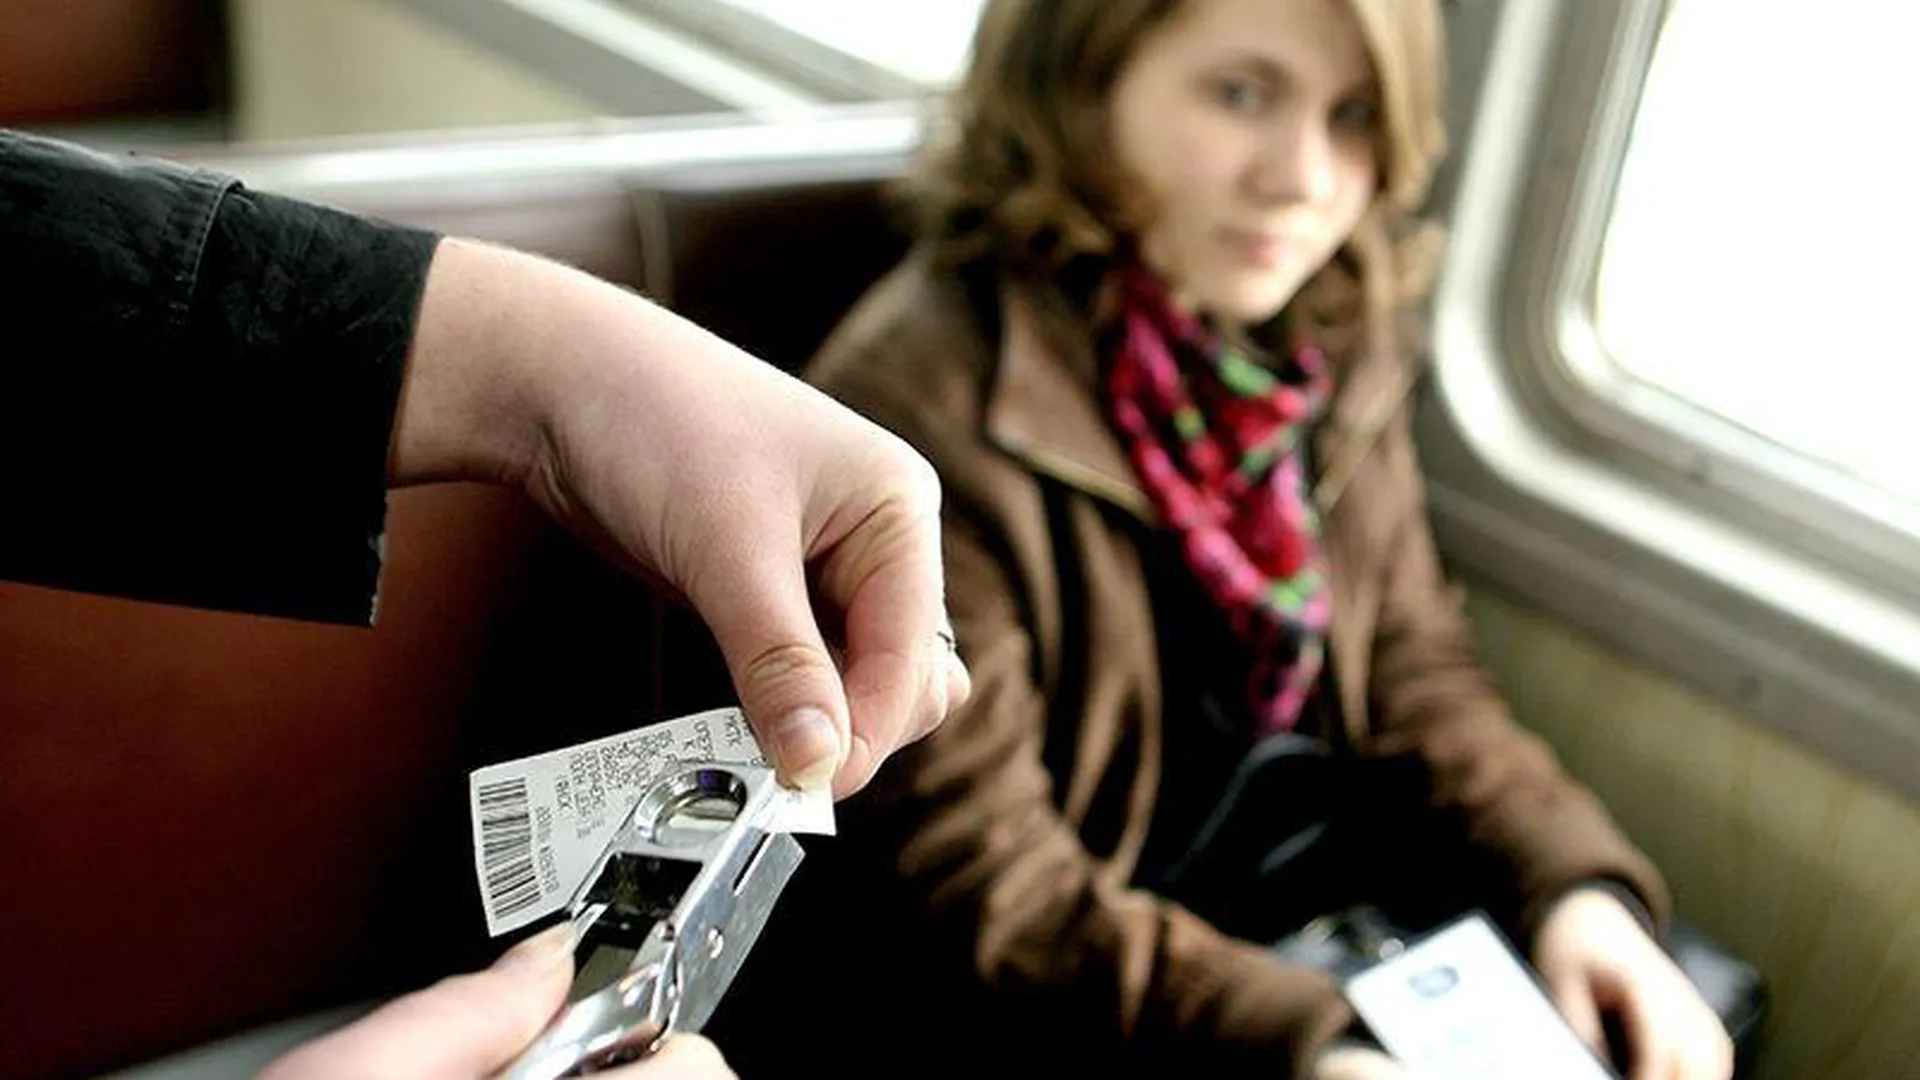 От контролеров не отличишь: мошенники нашли новый способ обмана пассажиров в электричках